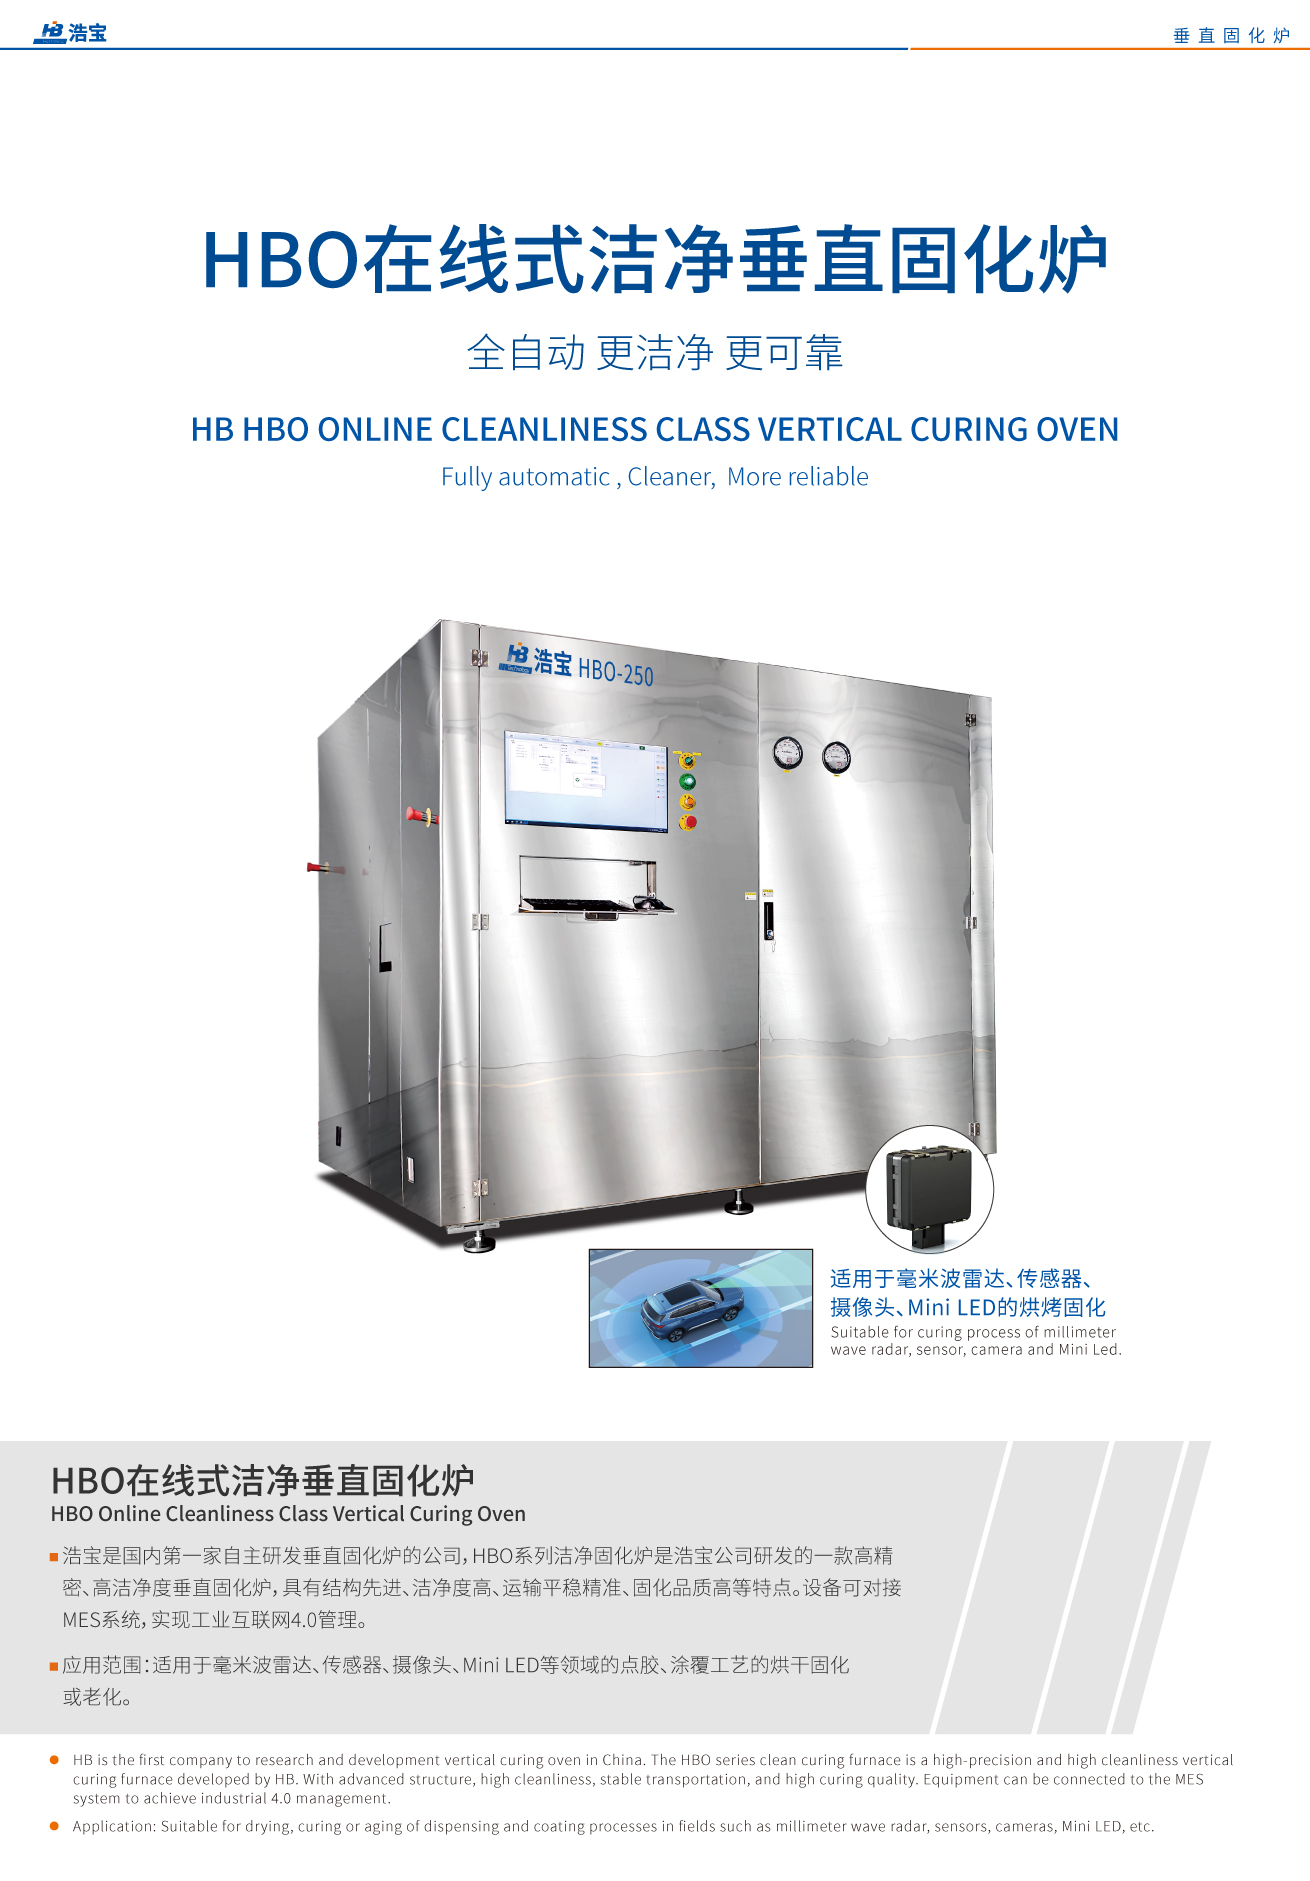 江南JN中国体育官方网站HBO系列洁净固化炉是江南JN中国体育官方网站公司研发的一款高精密、高洁净度垂直固化炉，具有结构先进、洁净度高、运输平稳精准、固化品质高等特点。设备可对接MES系统，实现工业互联网4.0管理。适用于毫米波雷达、传感器、摄像头、Mini LED等领域的点胶、涂覆工艺的烘干固化或老化